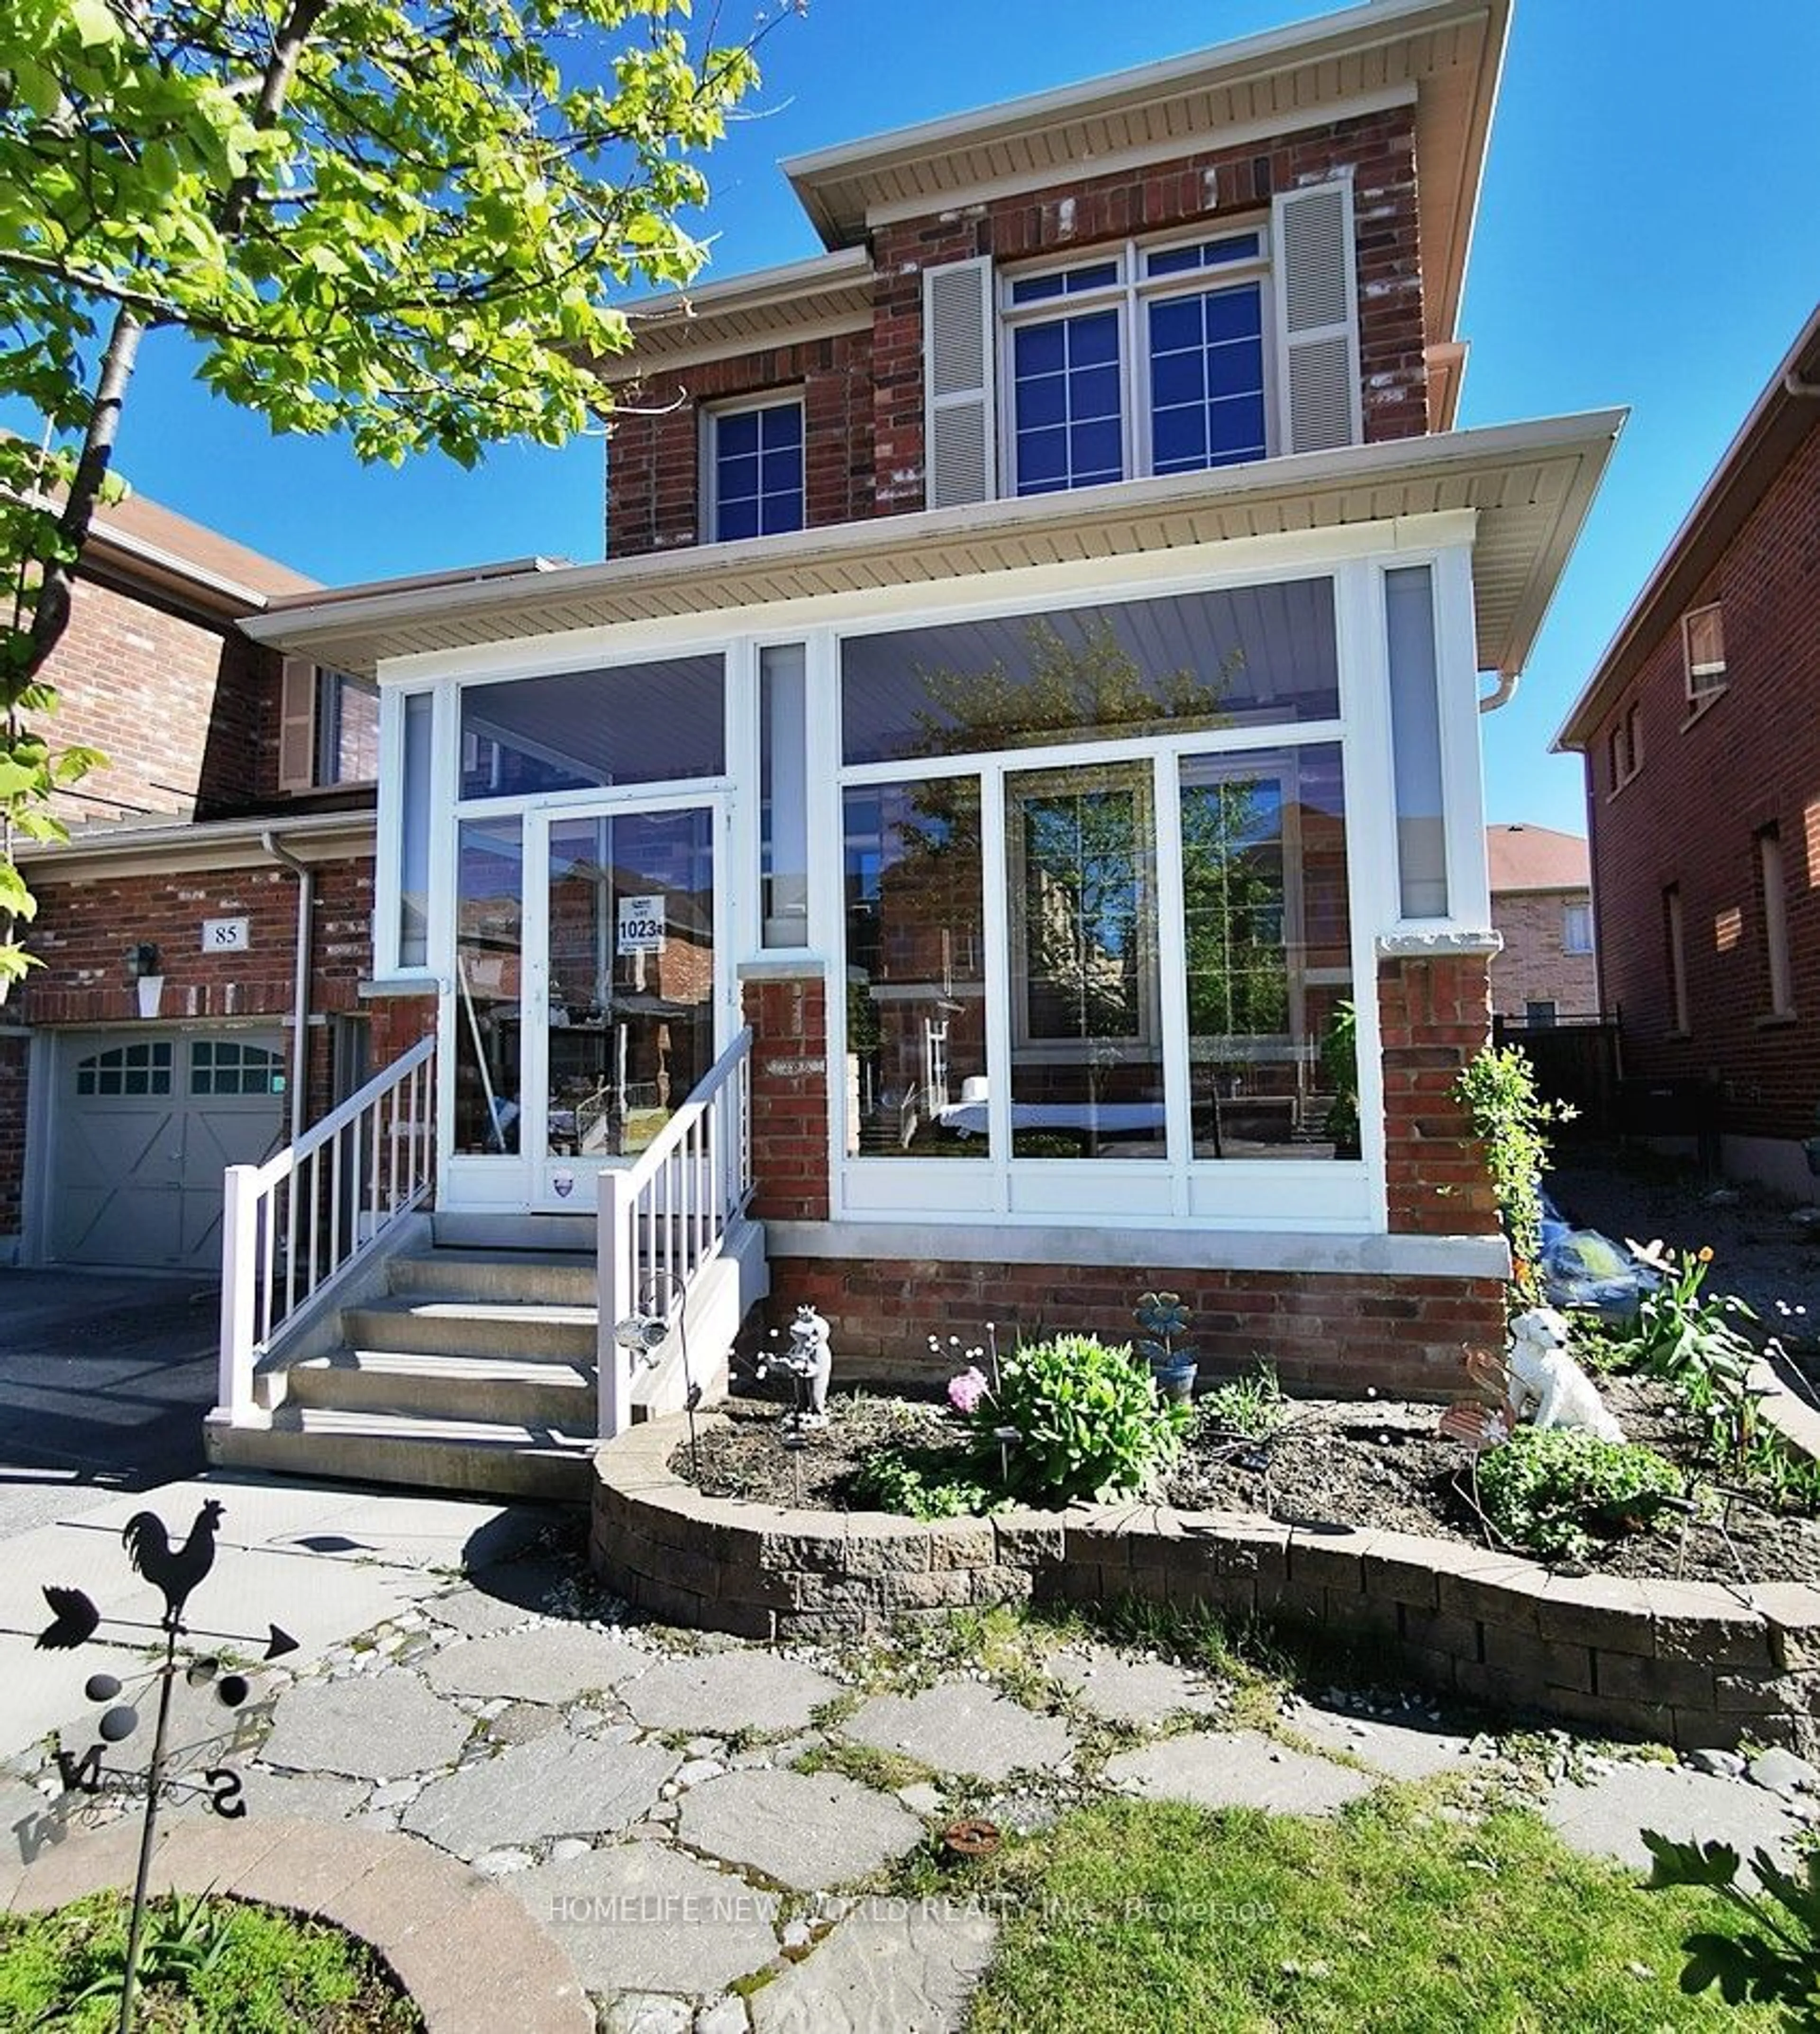 Home with brick exterior material for 83 Carolina Rose Cres, Markham Ontario L6E 0J7